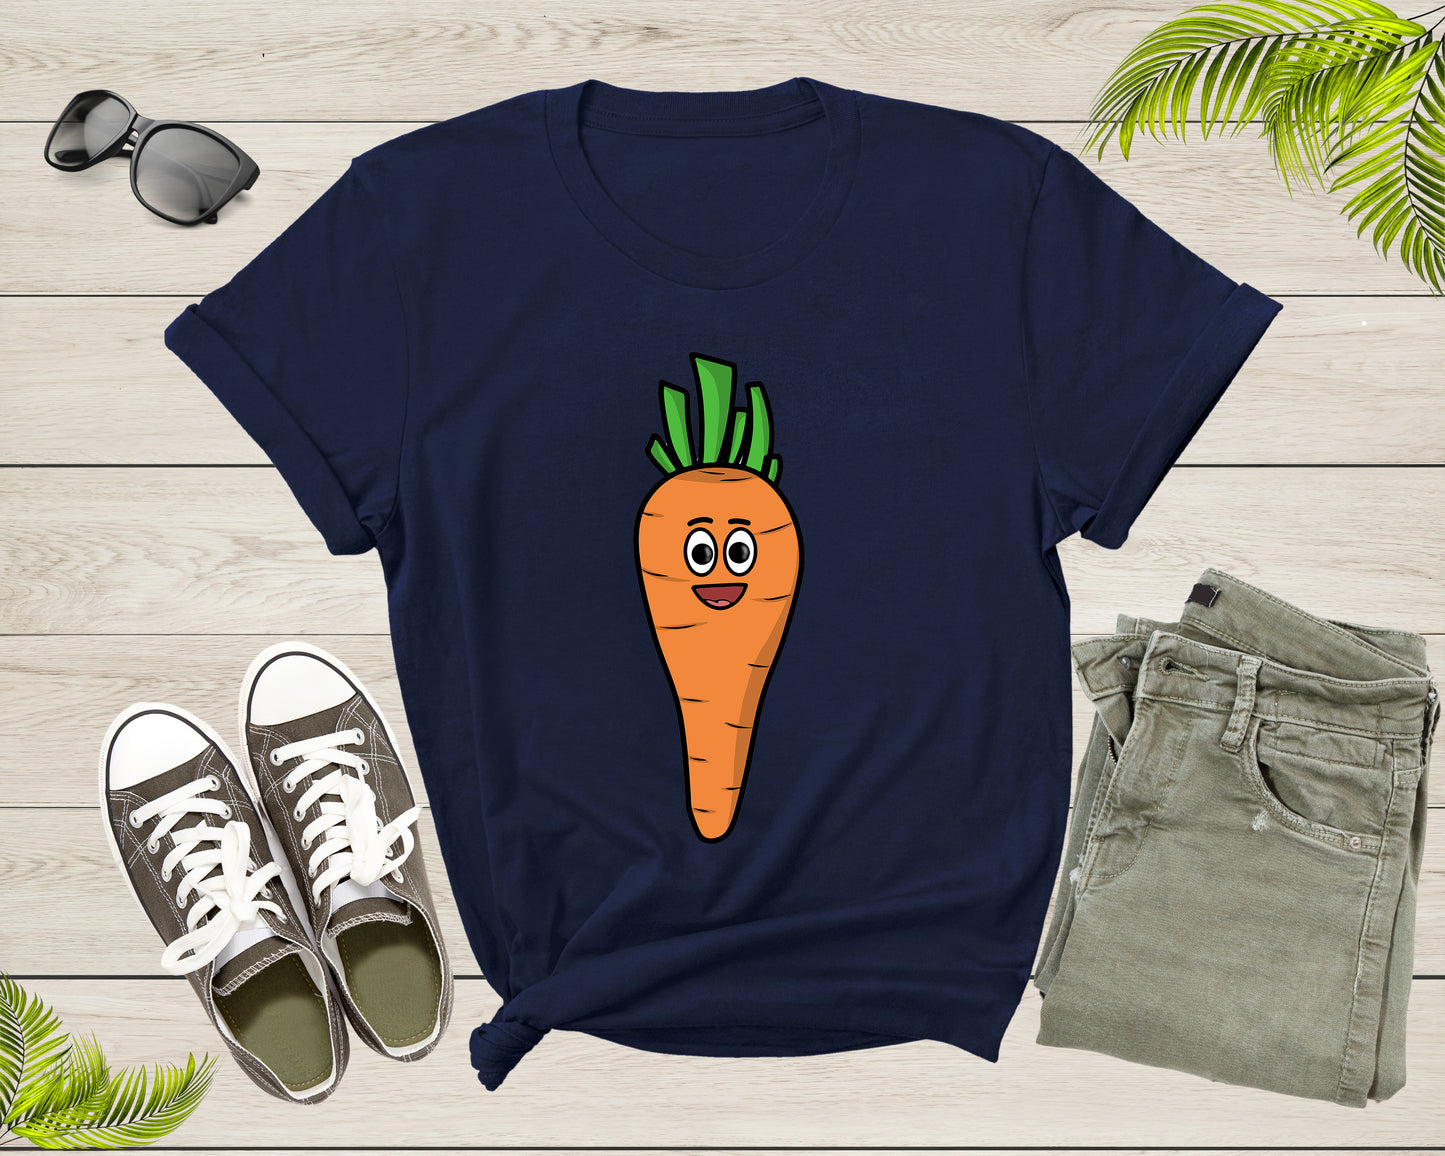 Funny Carrot Lover Gift Shirt Carrot Graphic Design Tshirt For Men Women Kids Boys Girls Carrot Themed Gift Ideas Birthday Present T-shirt